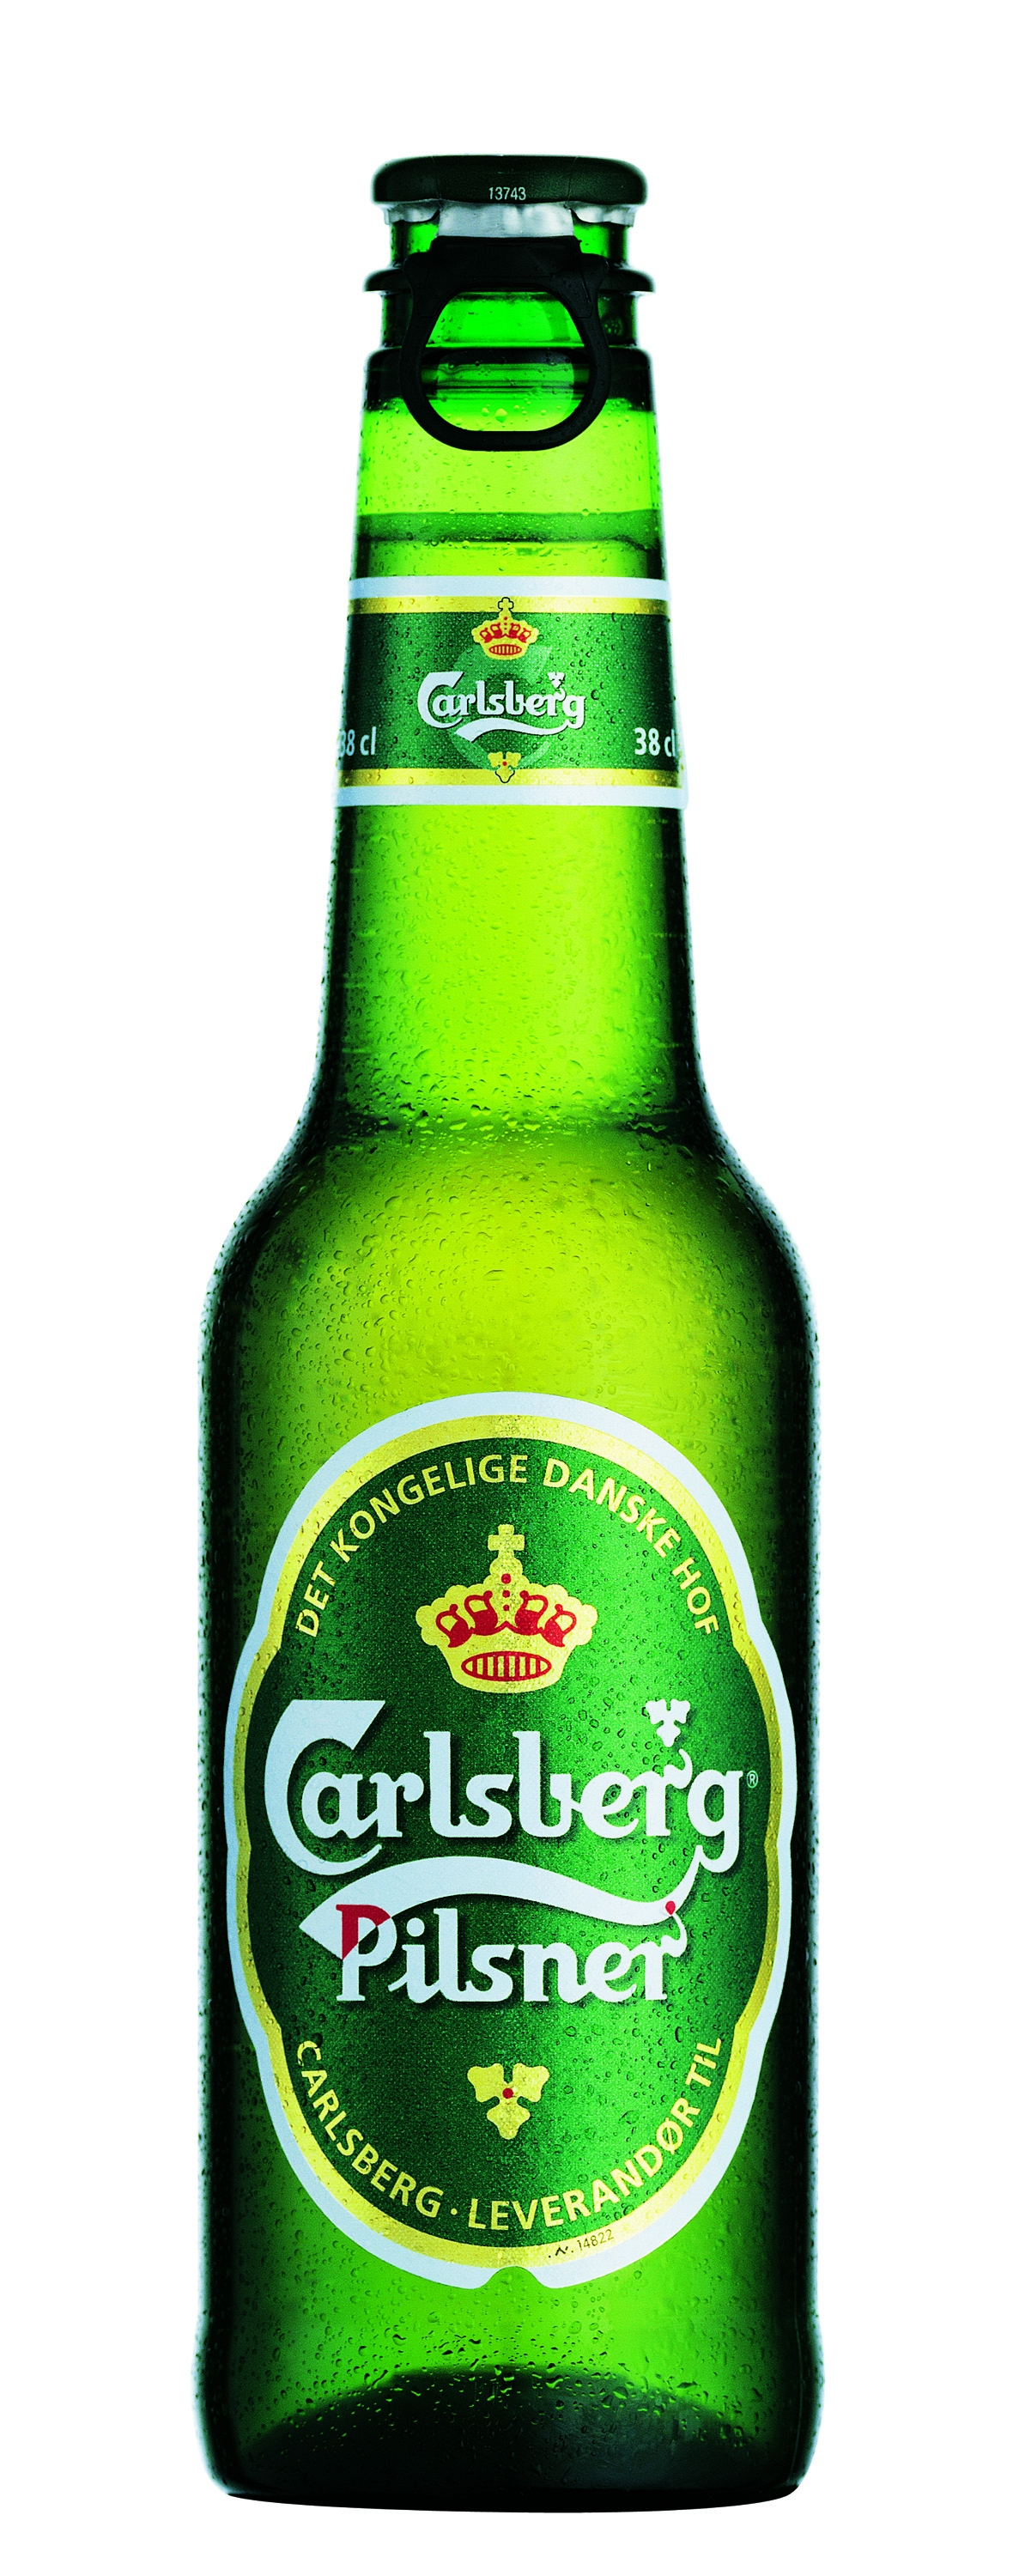 Sprøjteblæst ølflaske af PEN (Carlsberg Danmark A/S)